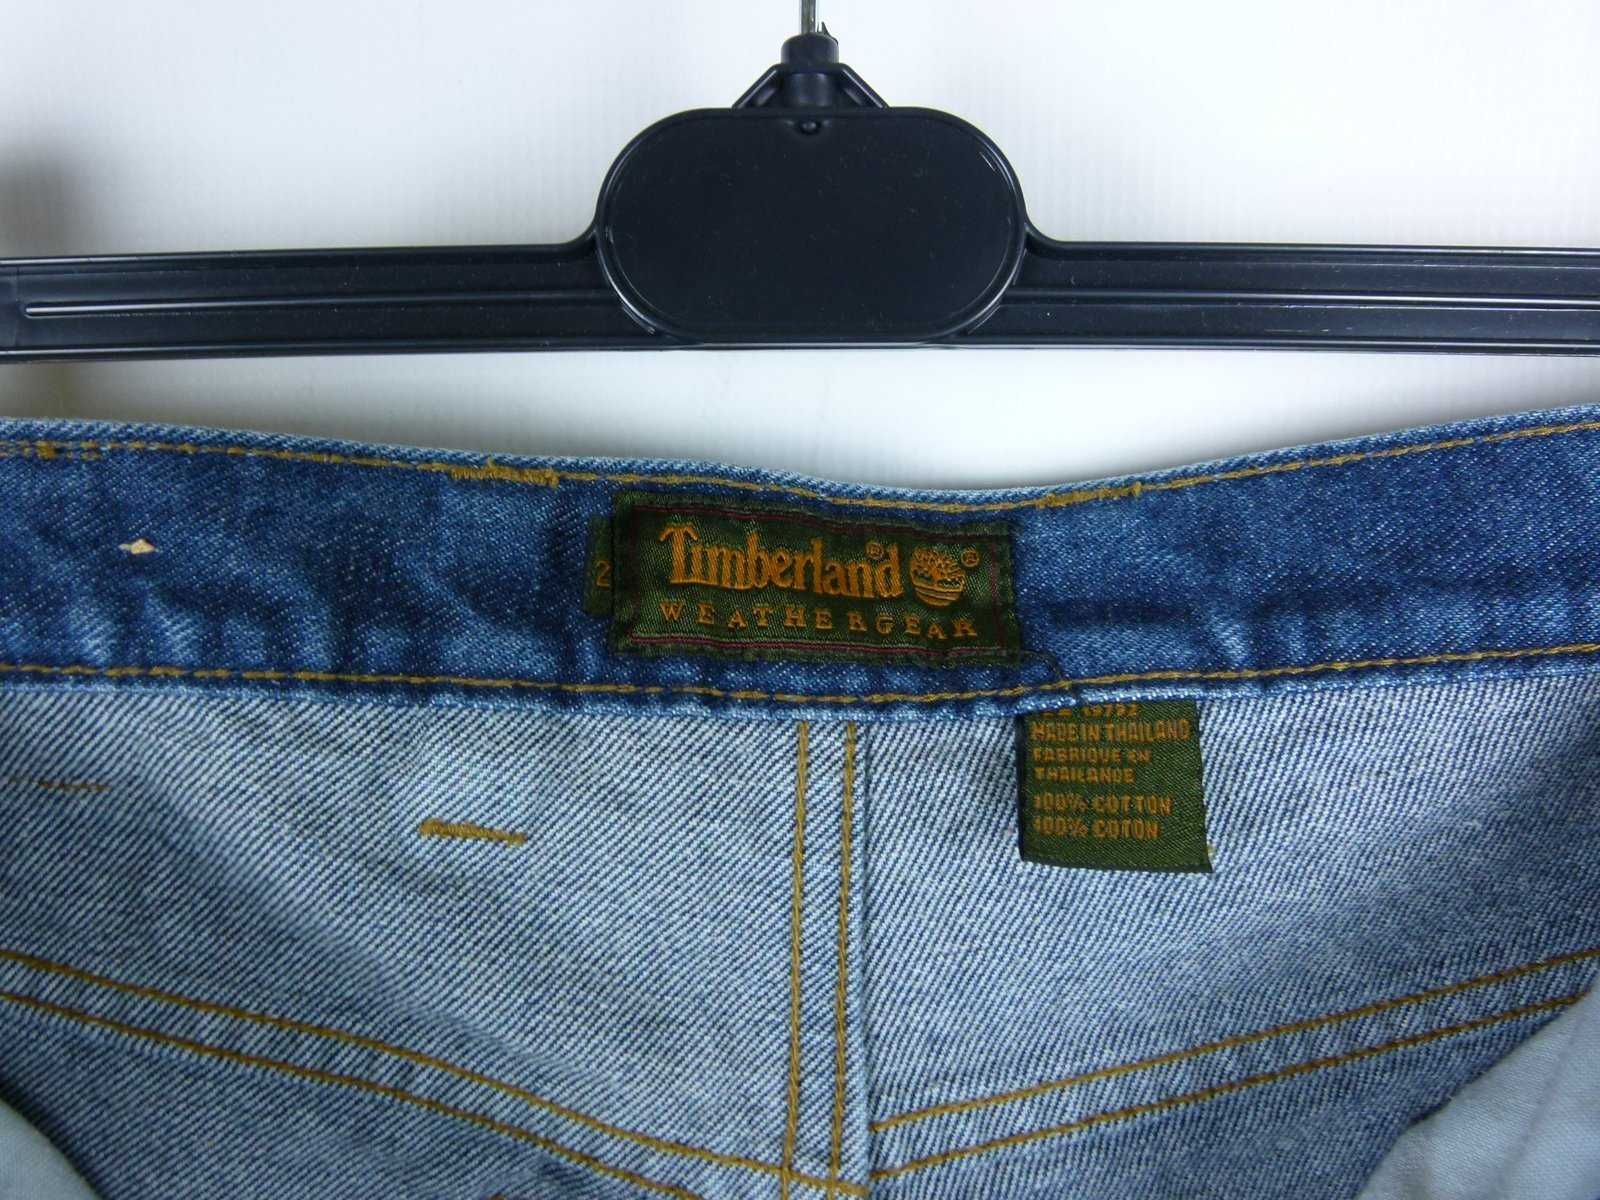 Timberland Weathergear spodnie jeans dżins / 32